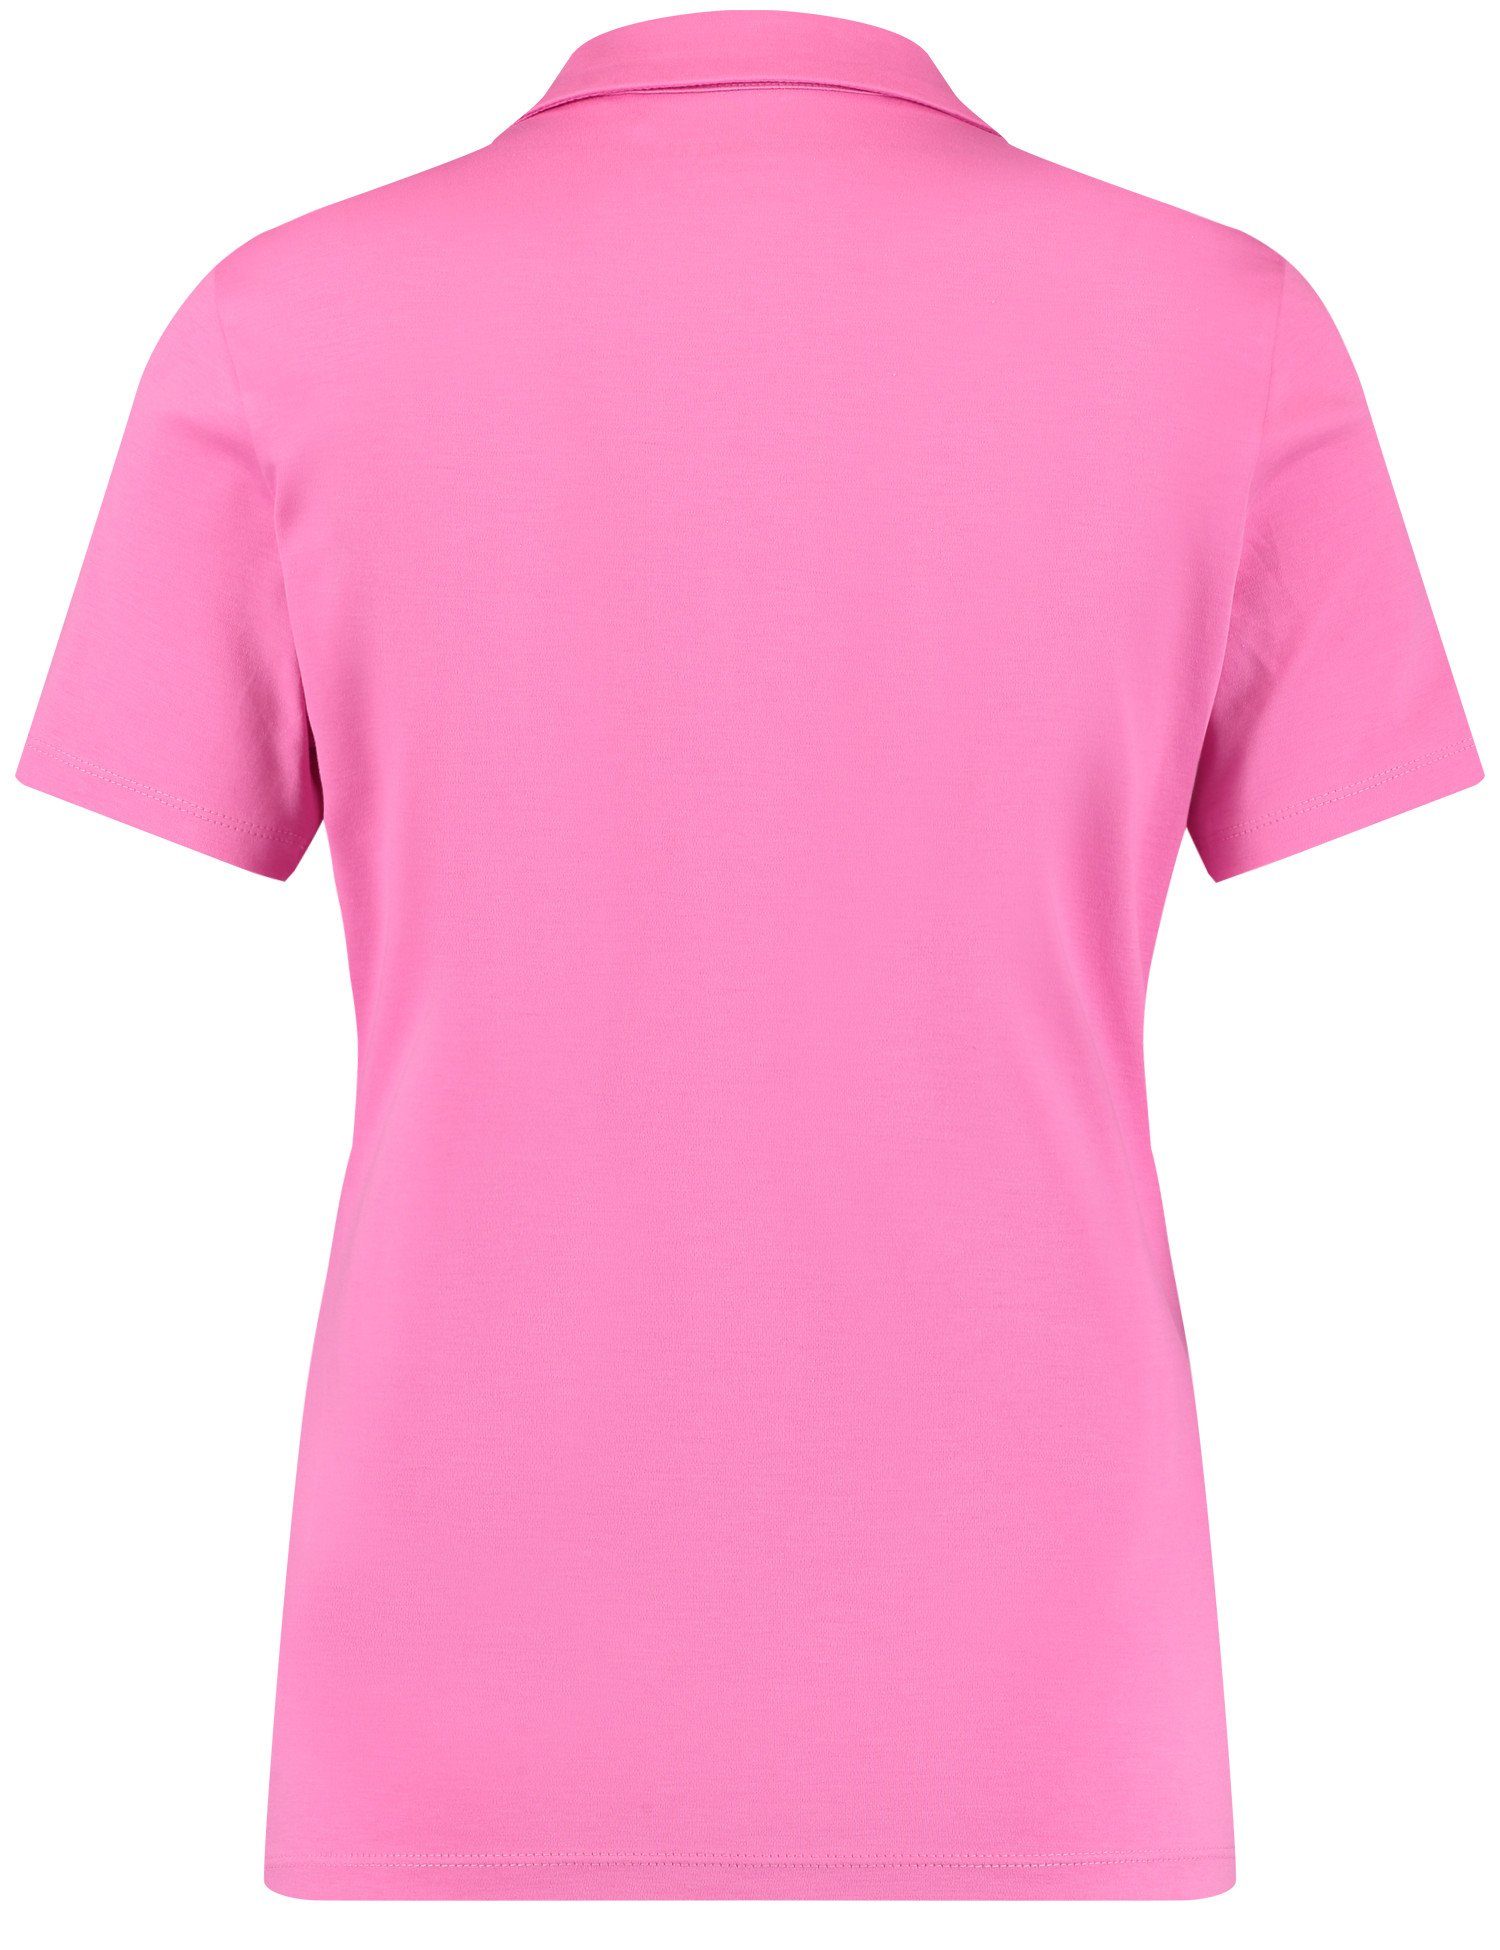 Poloshirt Pink Poloshirt WEBER GERRY Soft Kurzarm